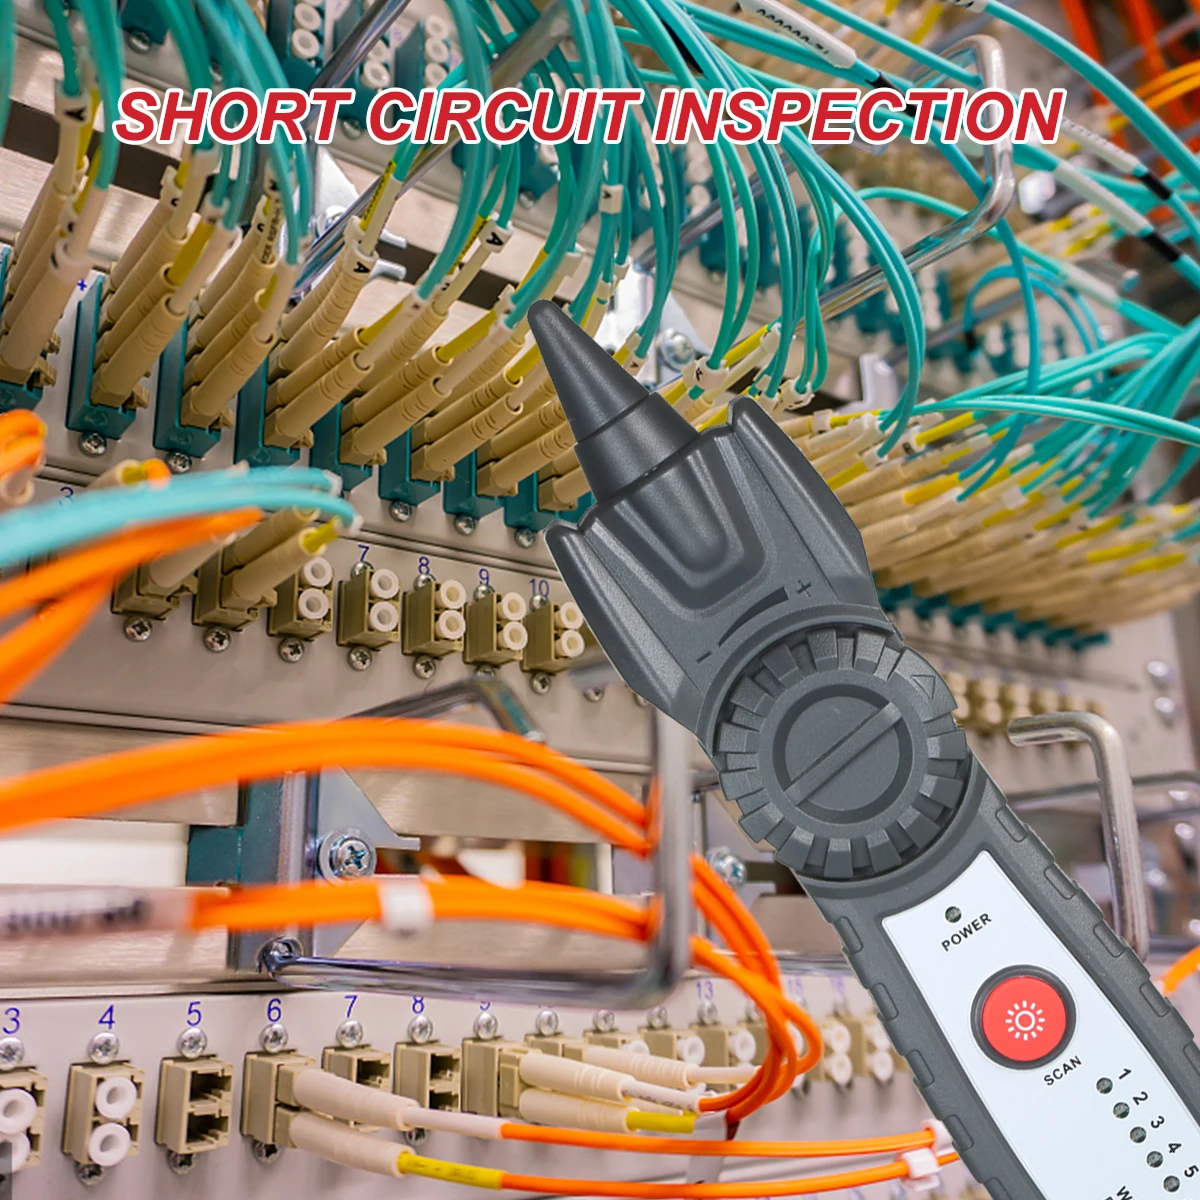 

Многофункциональный кабельный тестер RJ11 RJ45, прибор для обнаружения телефонных и сетевых линий с наушниками для обслуживания сети